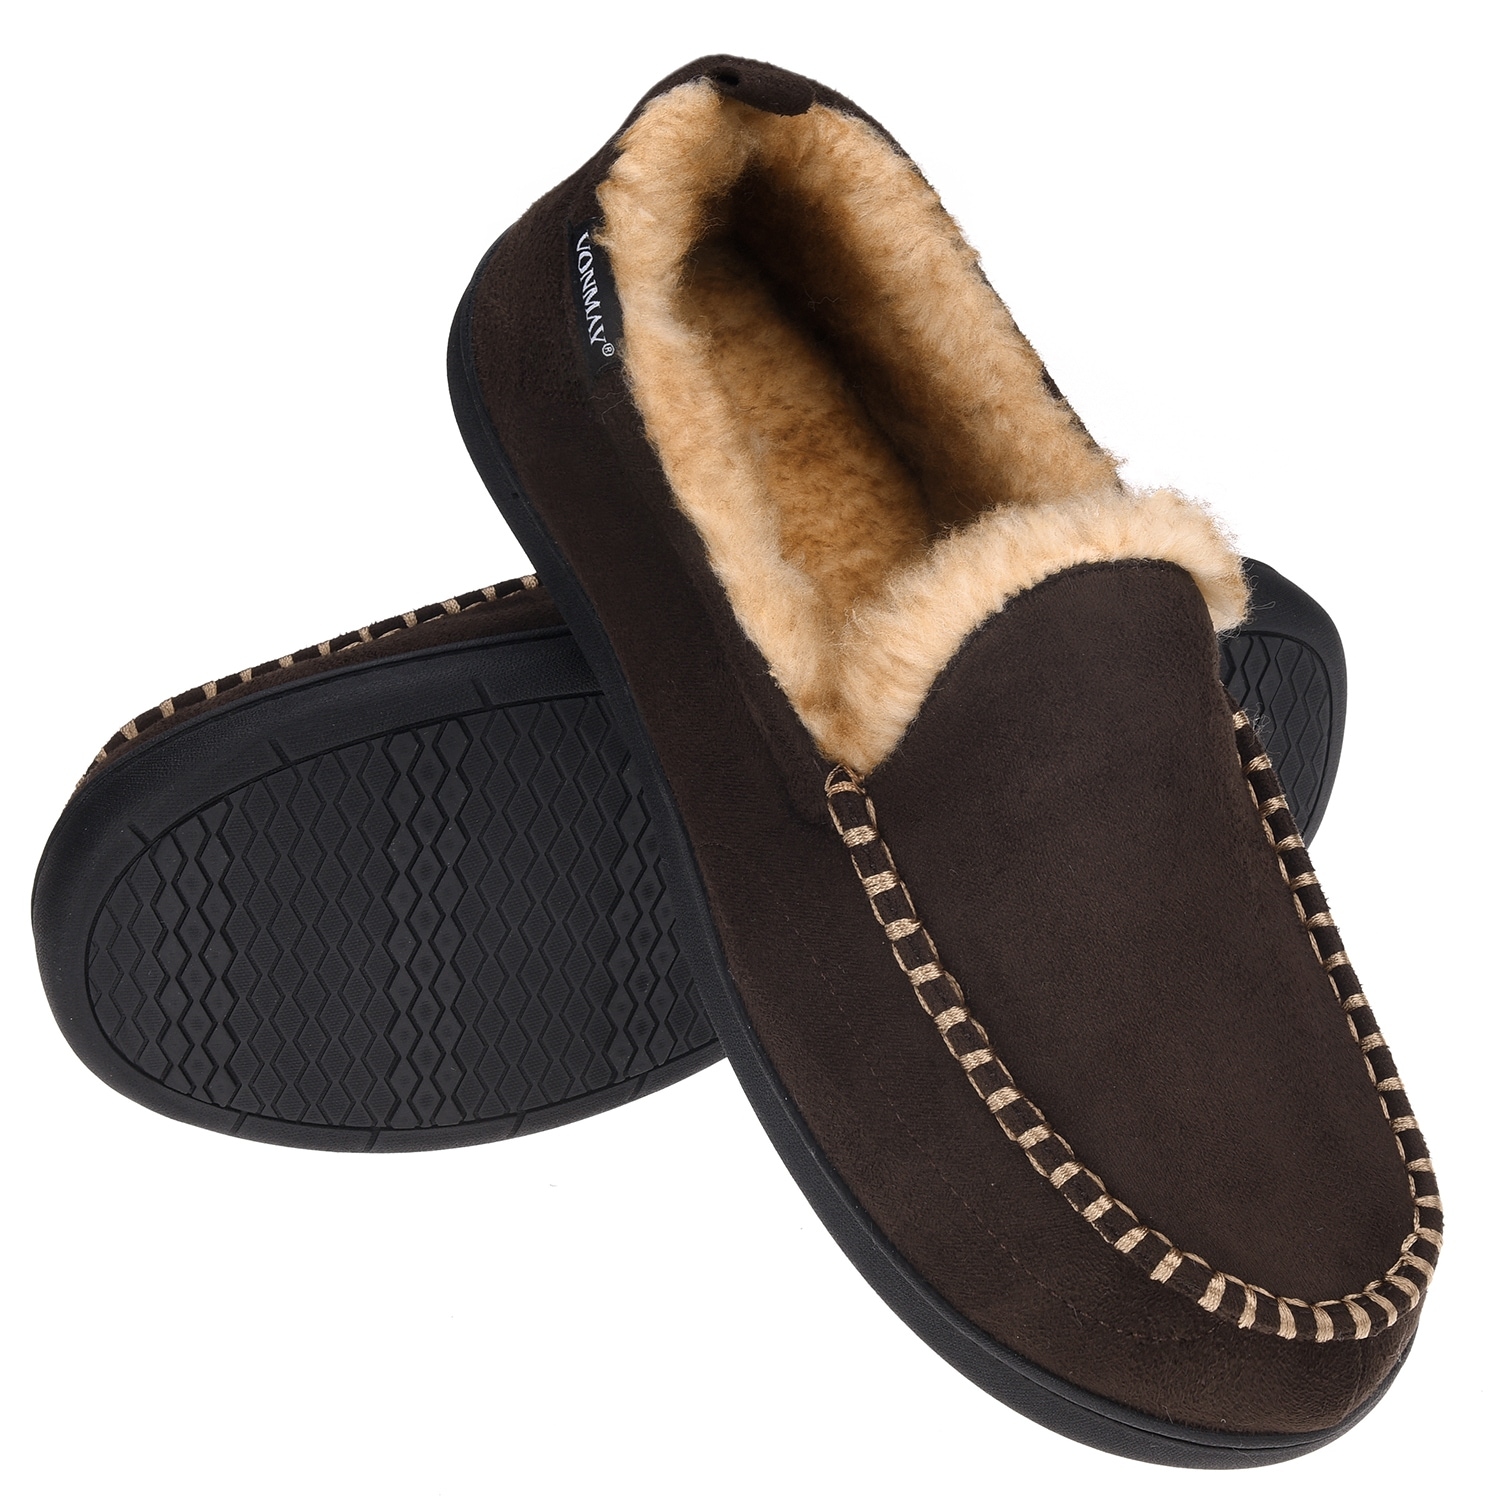 mens leather indoor outdoor slippers